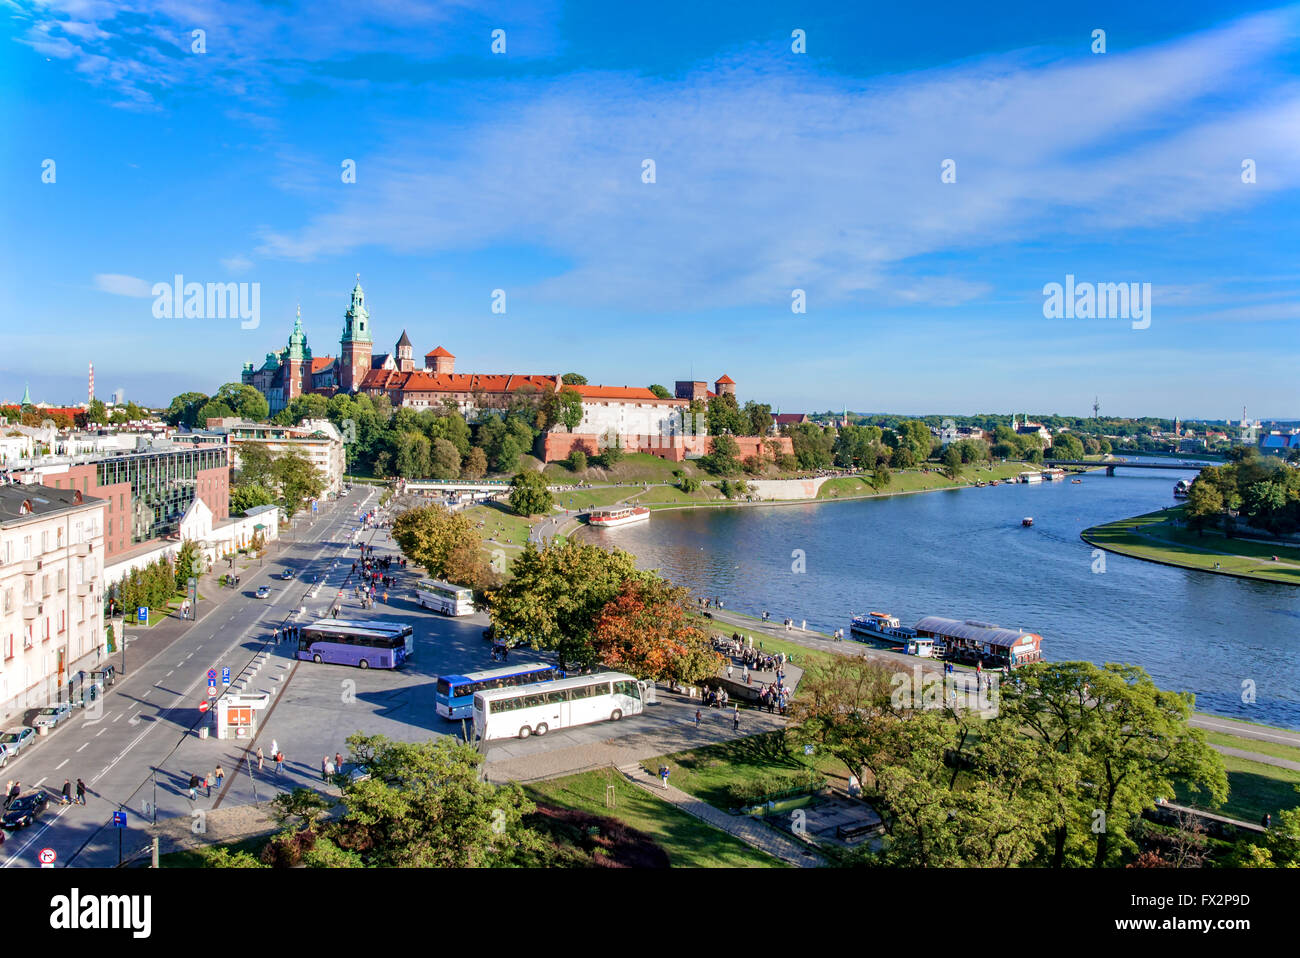 Krakau, Polen: Stadtansicht mit historischen Wawel Königsschloss, Kathedrale, Vistula Flusses, Touristen, Parkplätze und Hotels. Luftbild Stockfoto